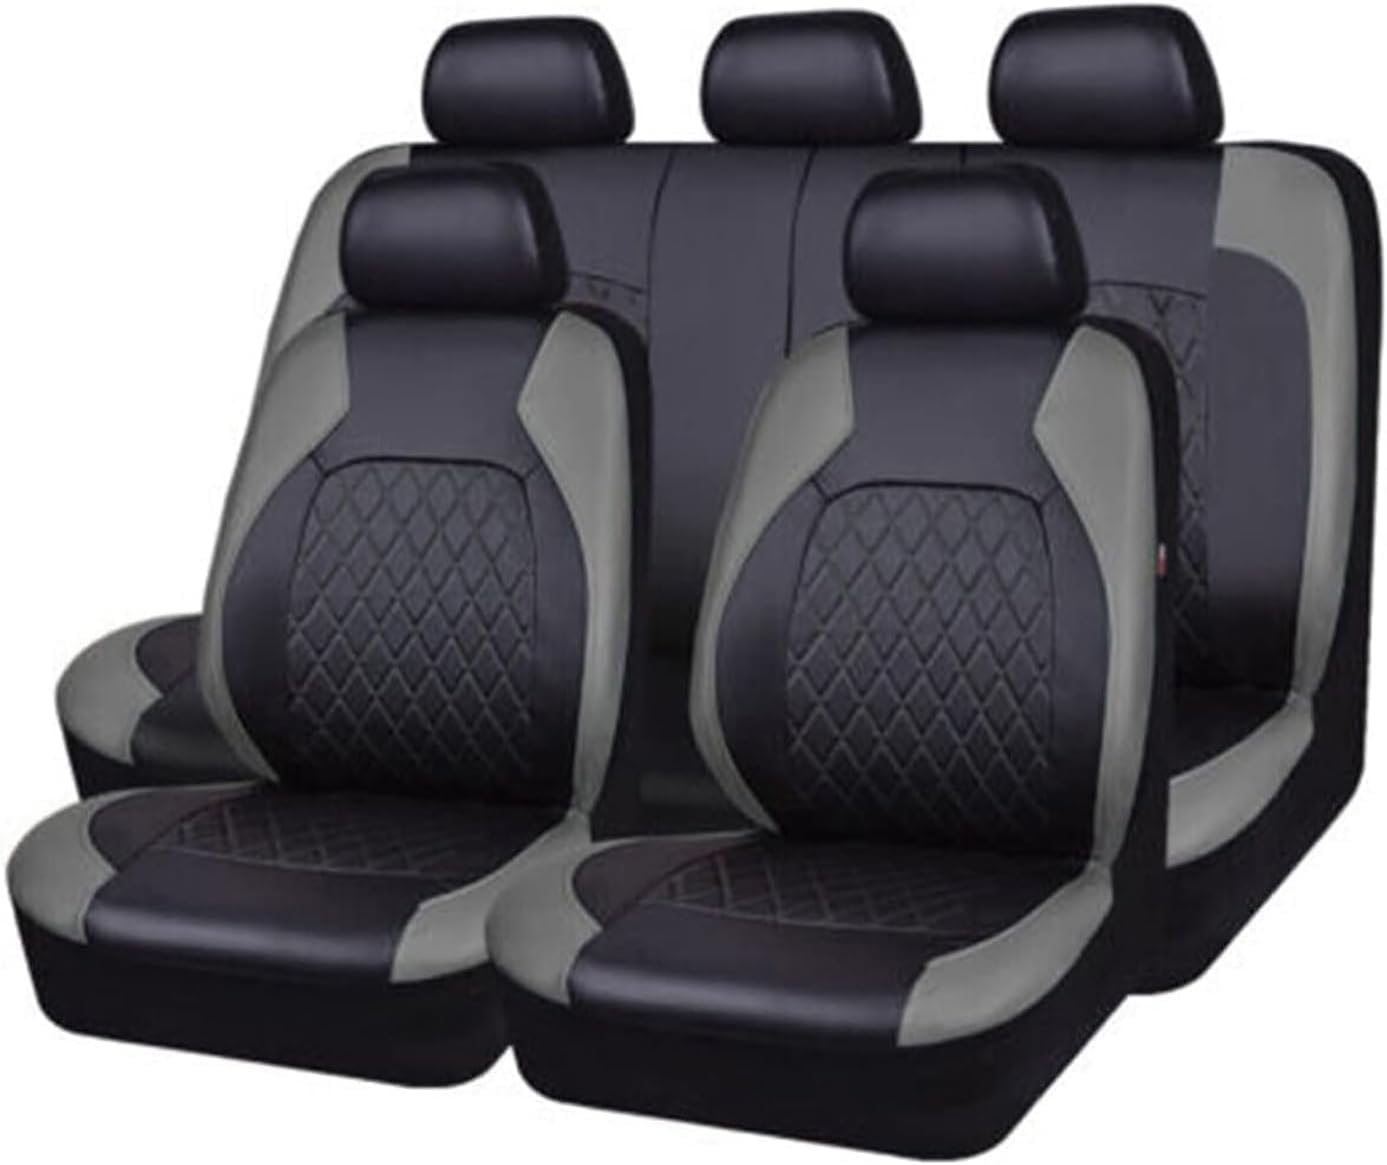 Auto Leder Sitzbezüge für BMW E39 F10 E60 F30 E46 E36 X1 E84 E90 Serie 1 E87 F20 E46 Tuning E60 X5 E53 F30 E70, 9 Stück Allwetter rutschfest Wasserdicht Atmungsaktiv Schonbezug Set Sitzkissenschutz von SARCX